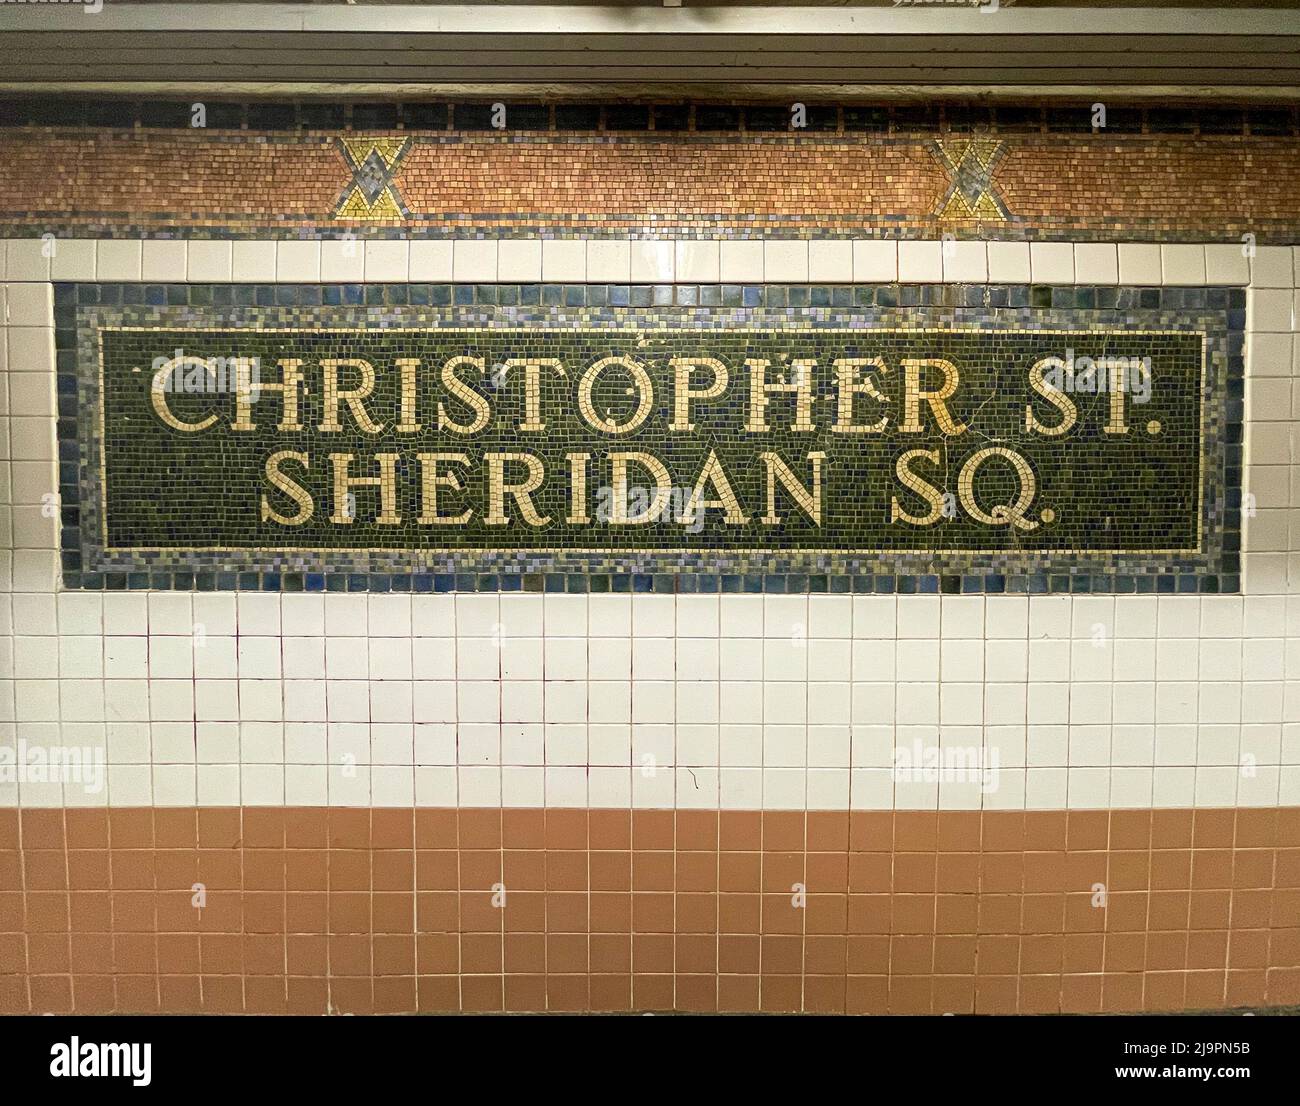 New York, NY - USA - le 20 mai 2022 le panneau en mosaïque de carreaux de céramique coloré de la station Christopher Street–Sheridan Square, une station locale sur l'IRT Banque D'Images